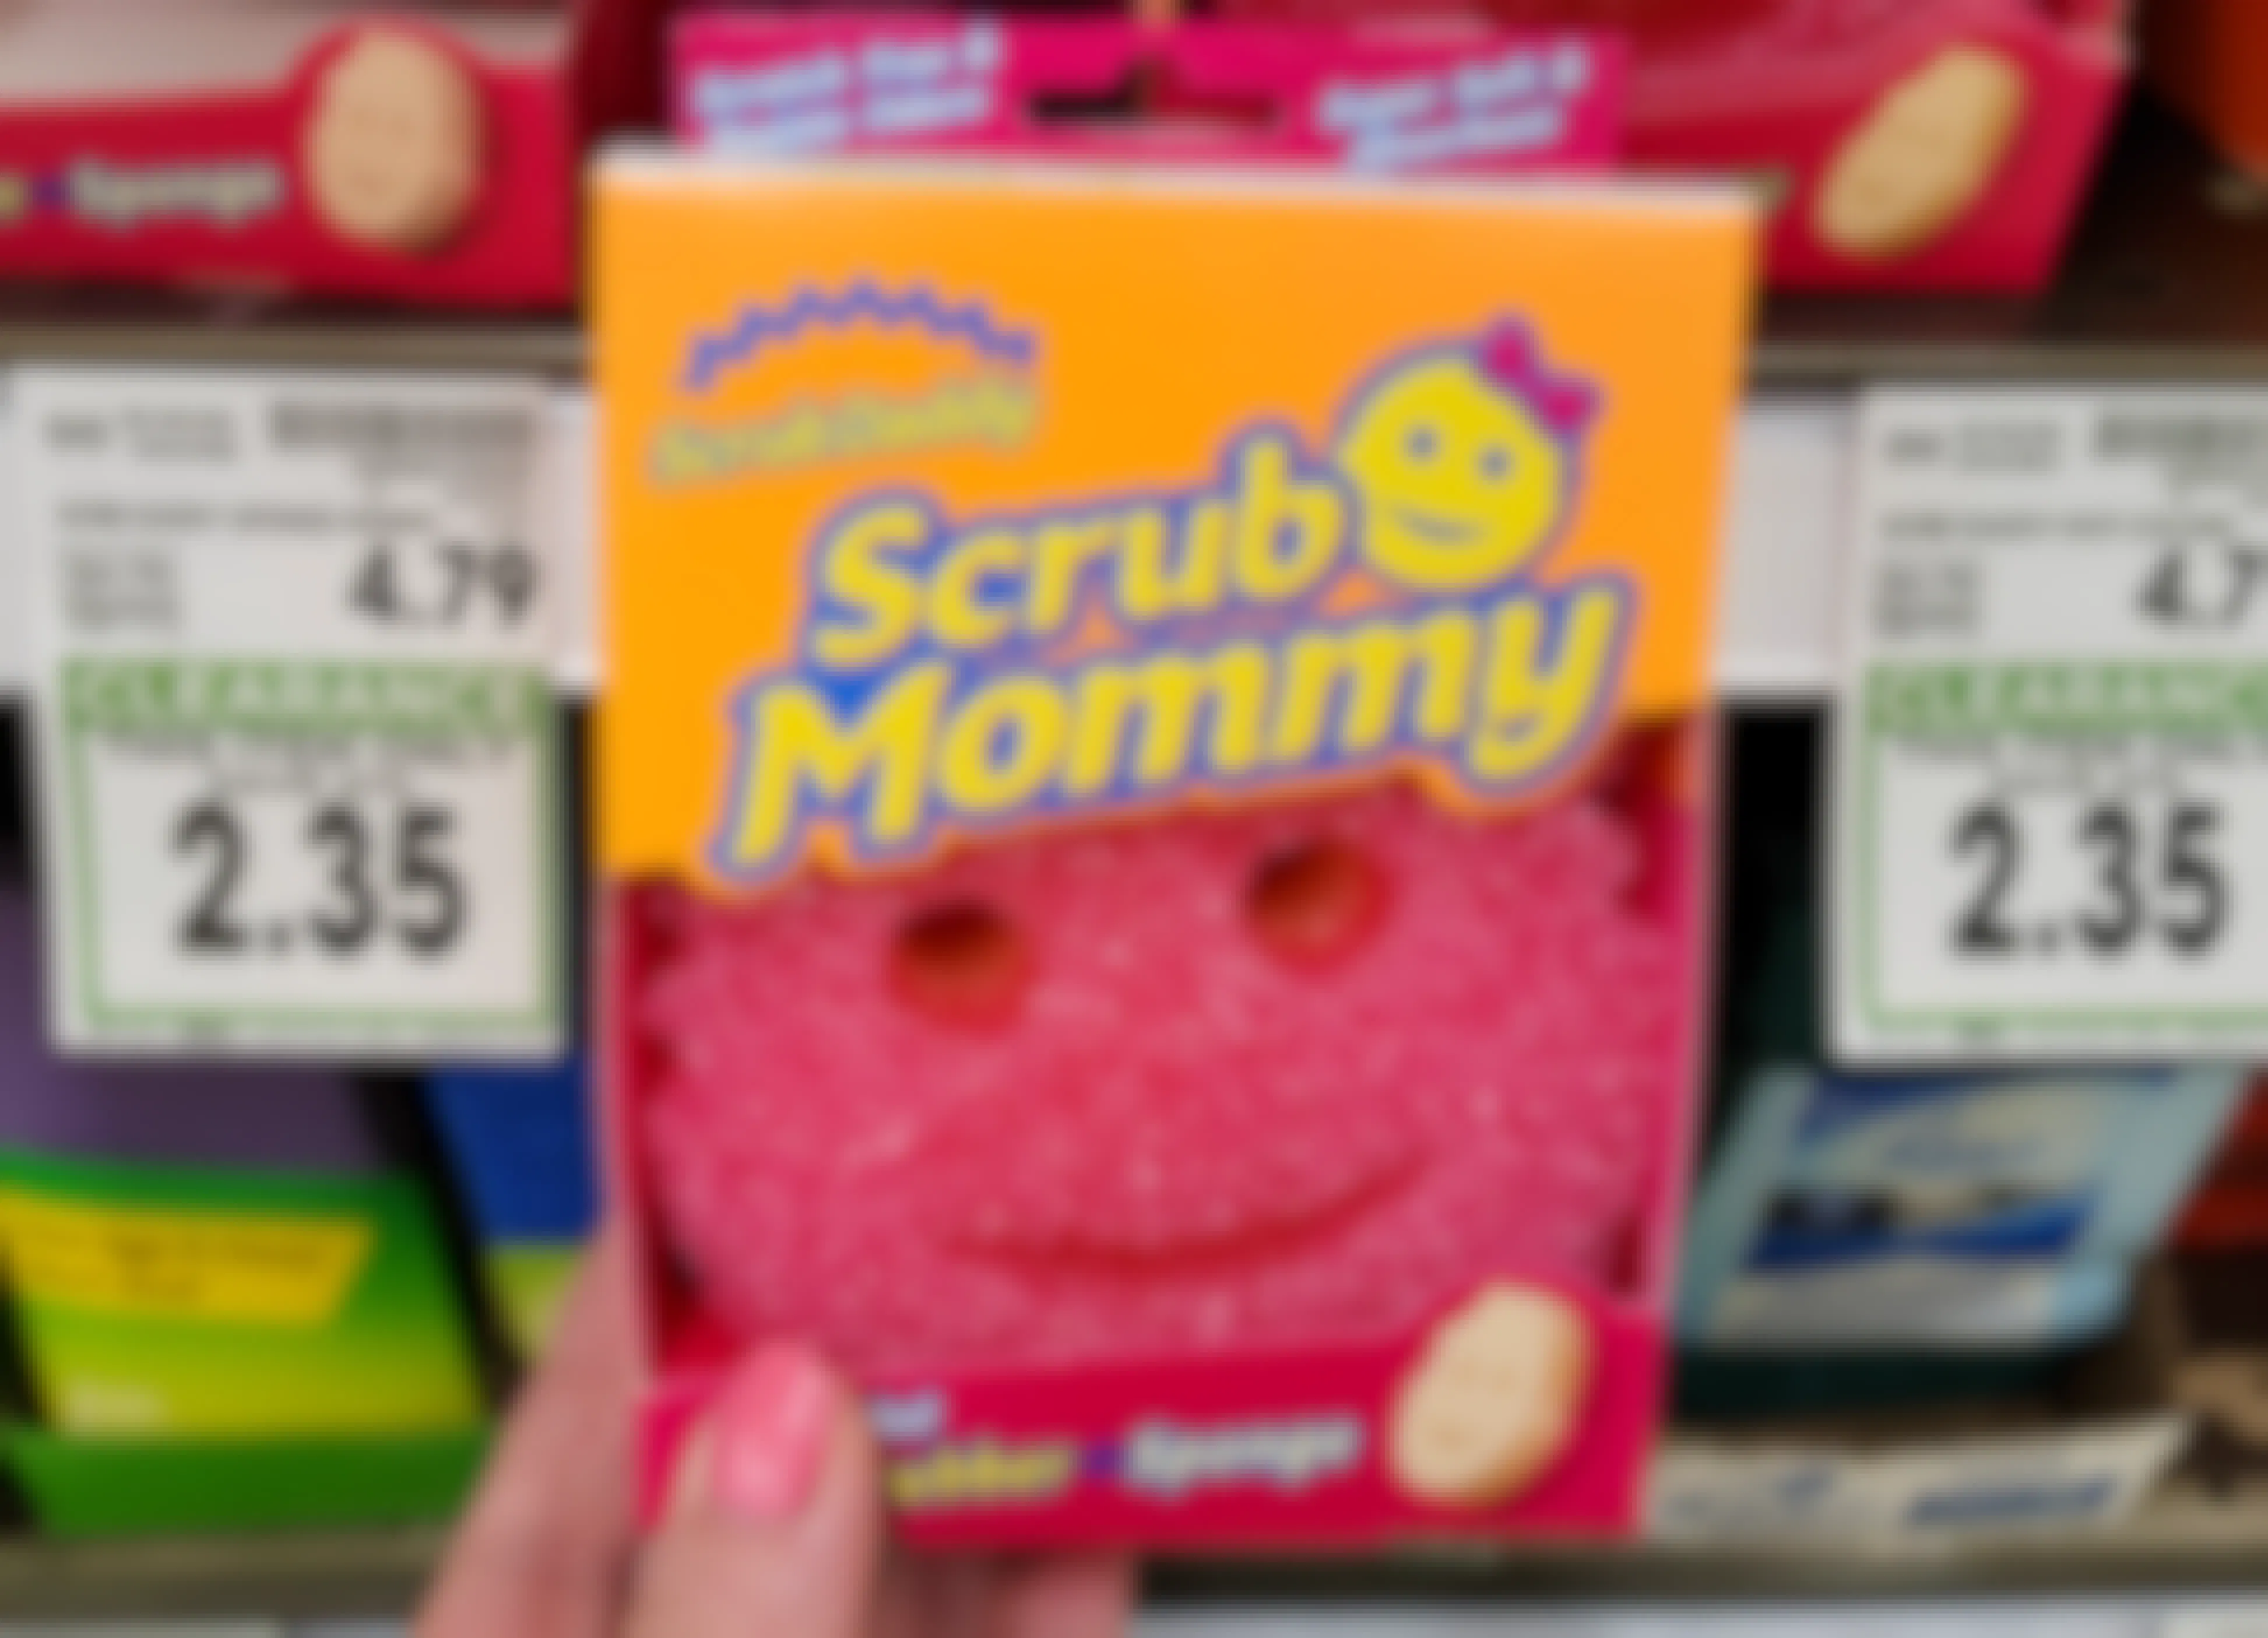 Scrub Mommy & Scrub Daddy Sponges, Only $2.35 at Kroger